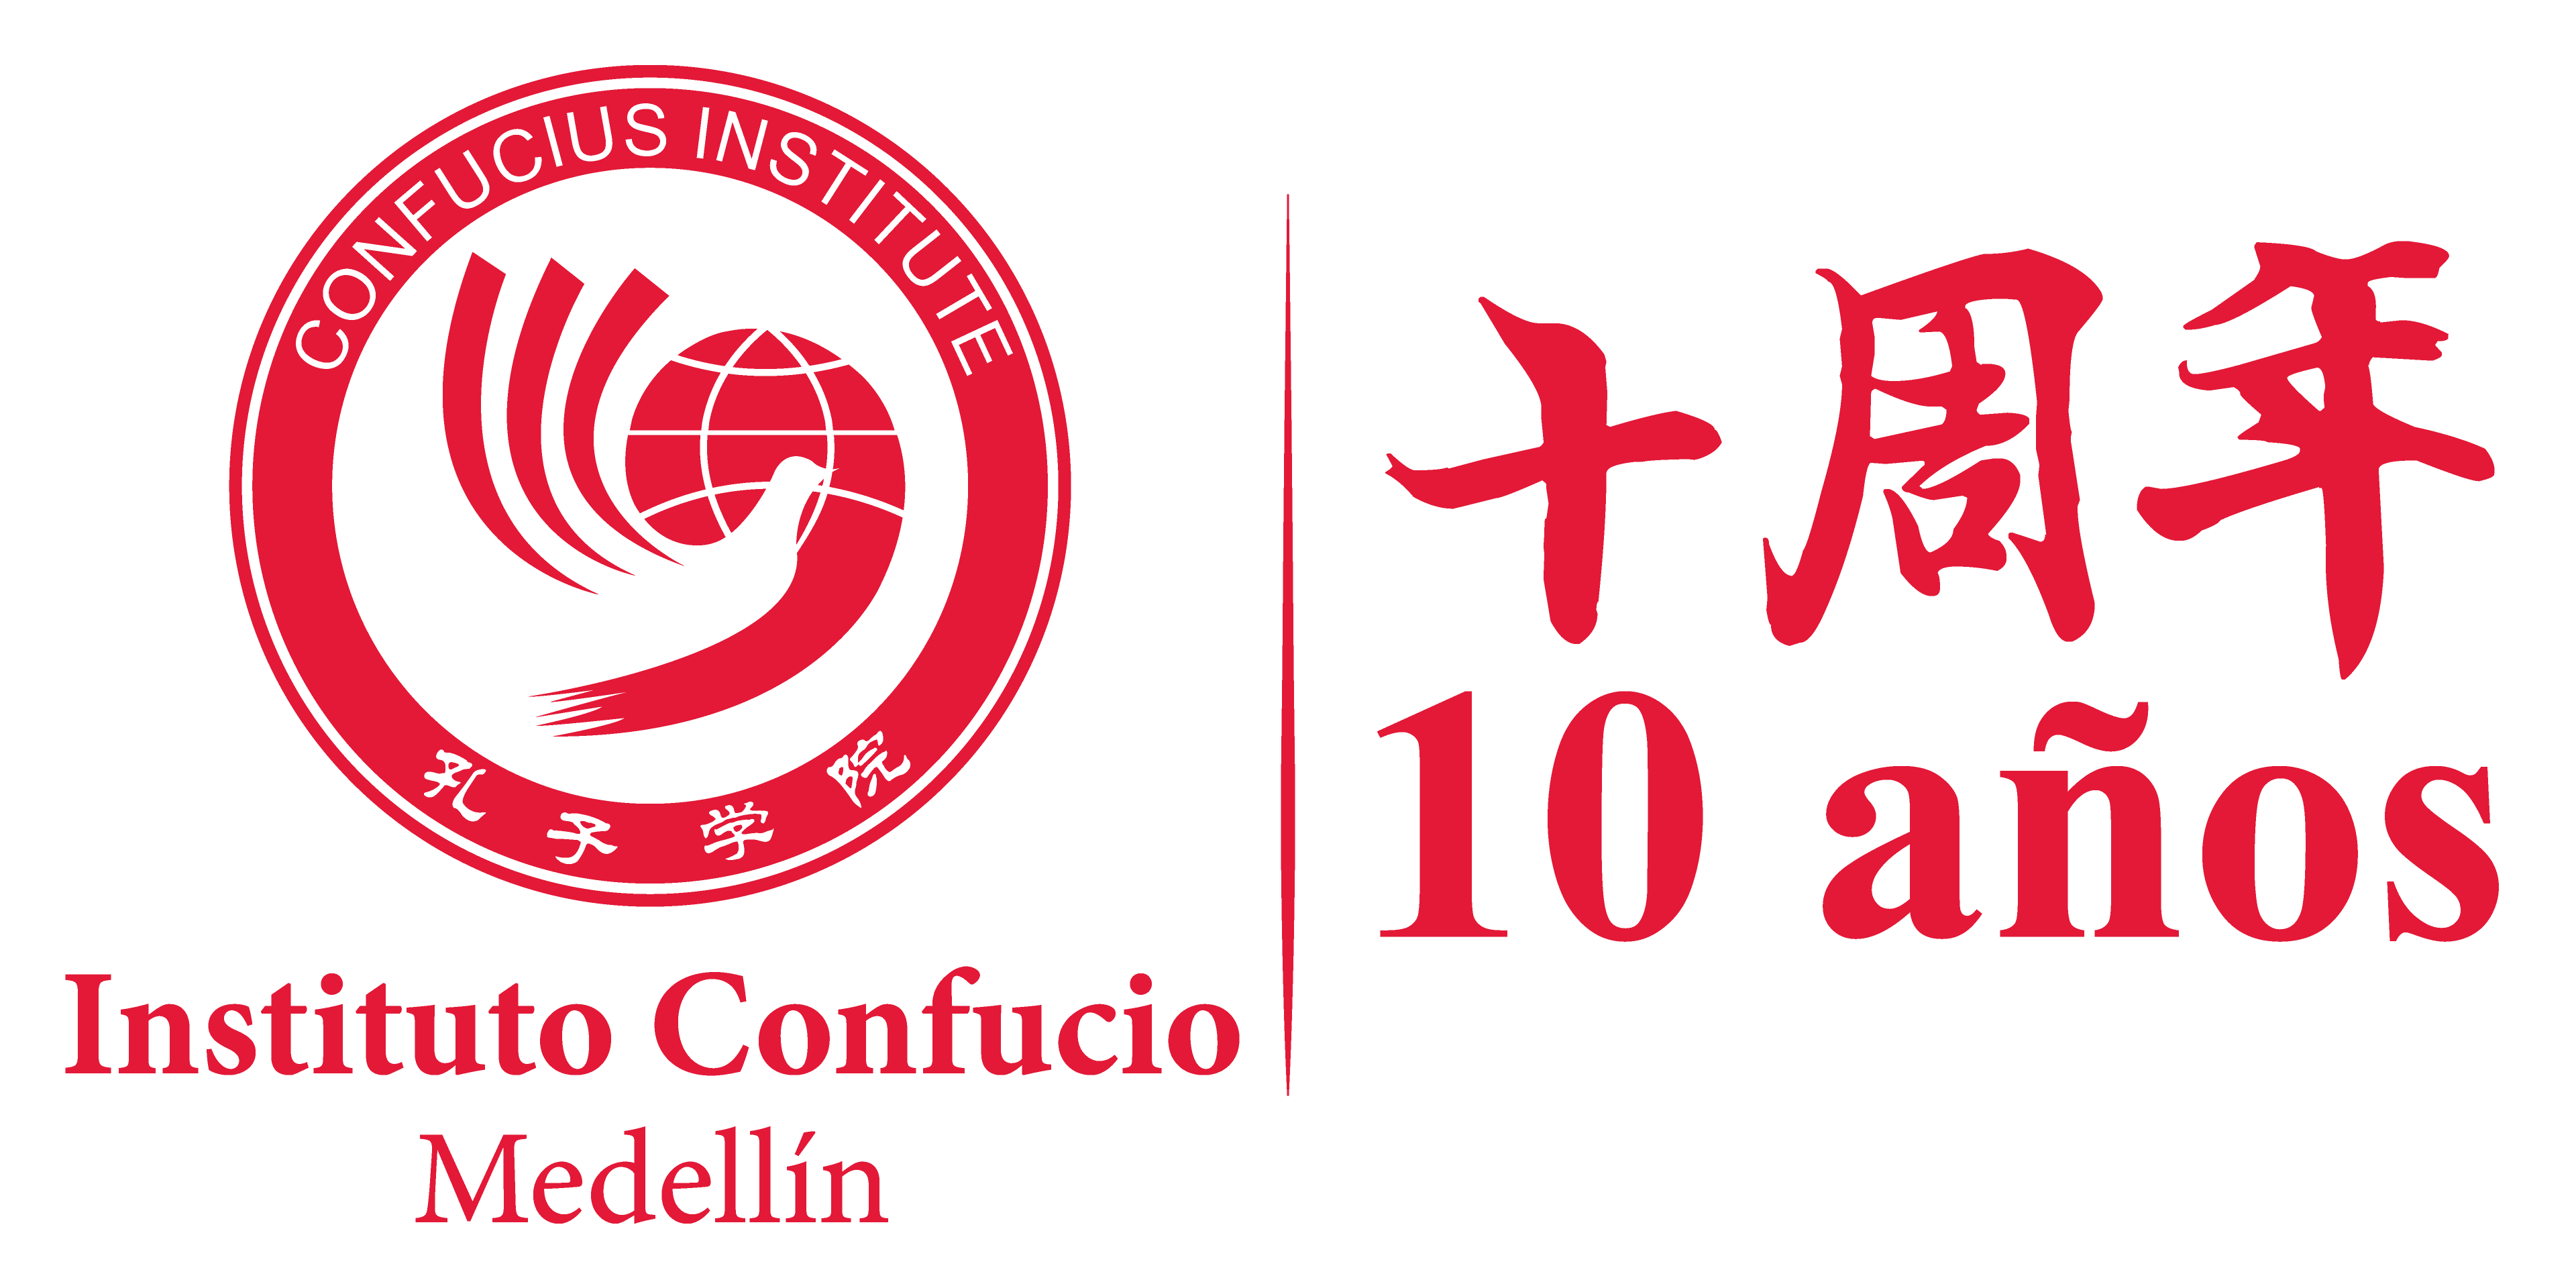 Instituto Confucio Medellín 10 años